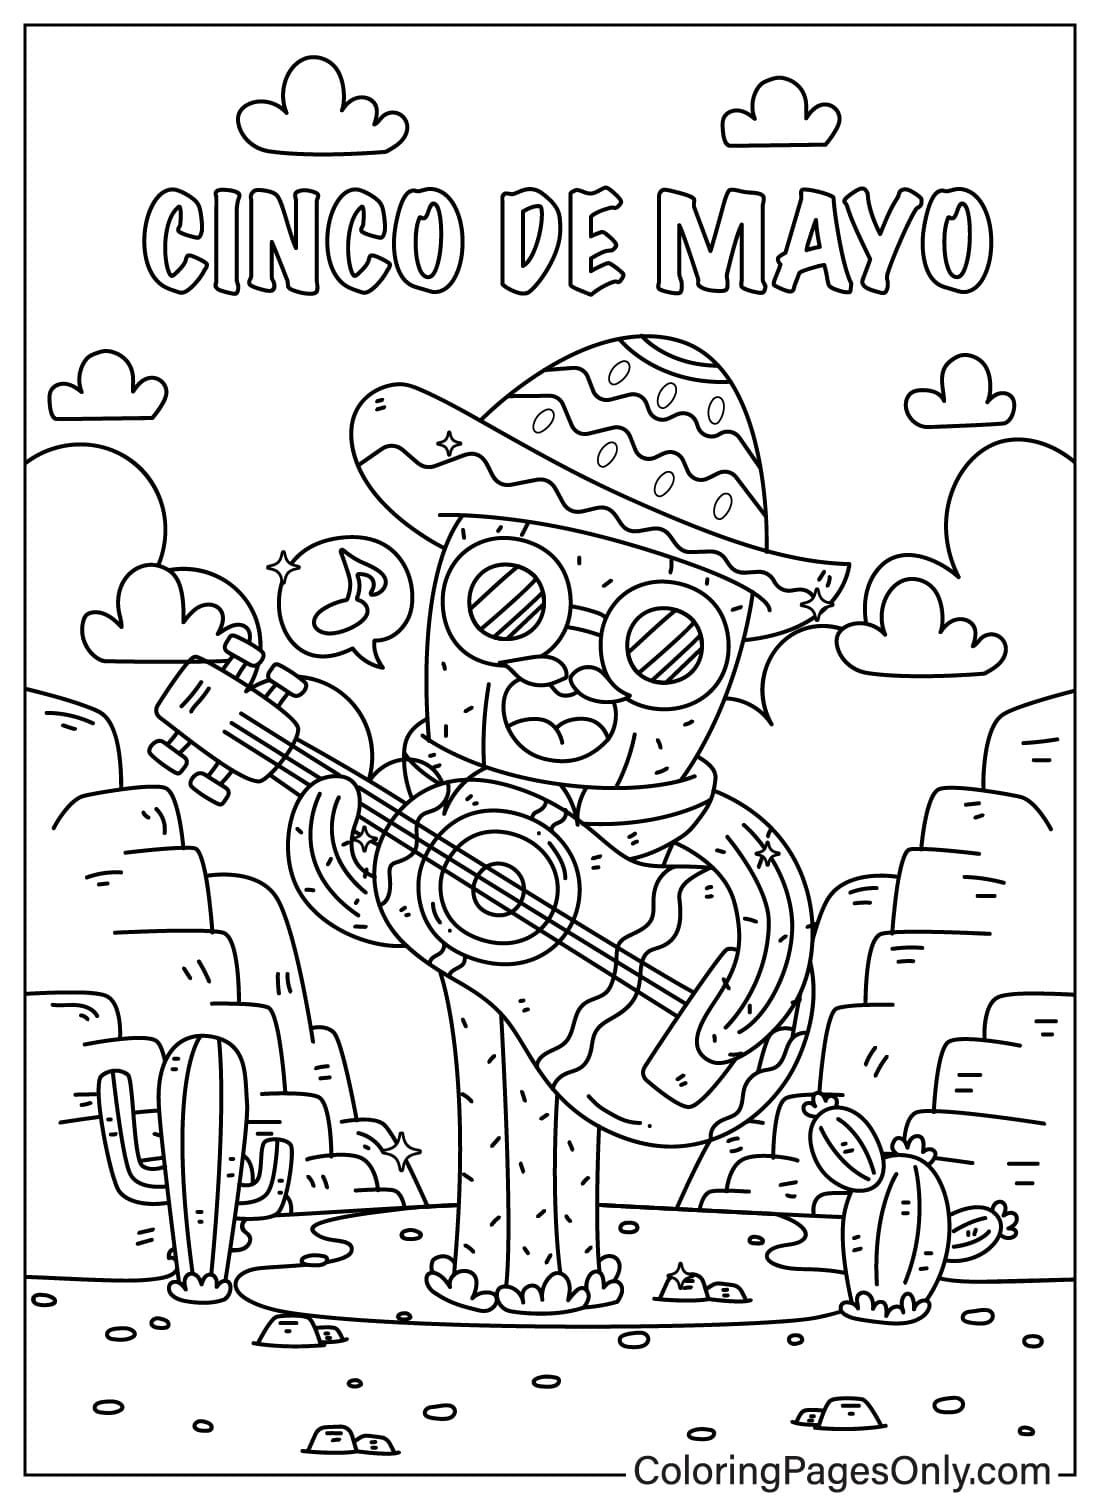 Cinco De Mayo Der Kaktus spielt, während er von Cinco De Mayo singt